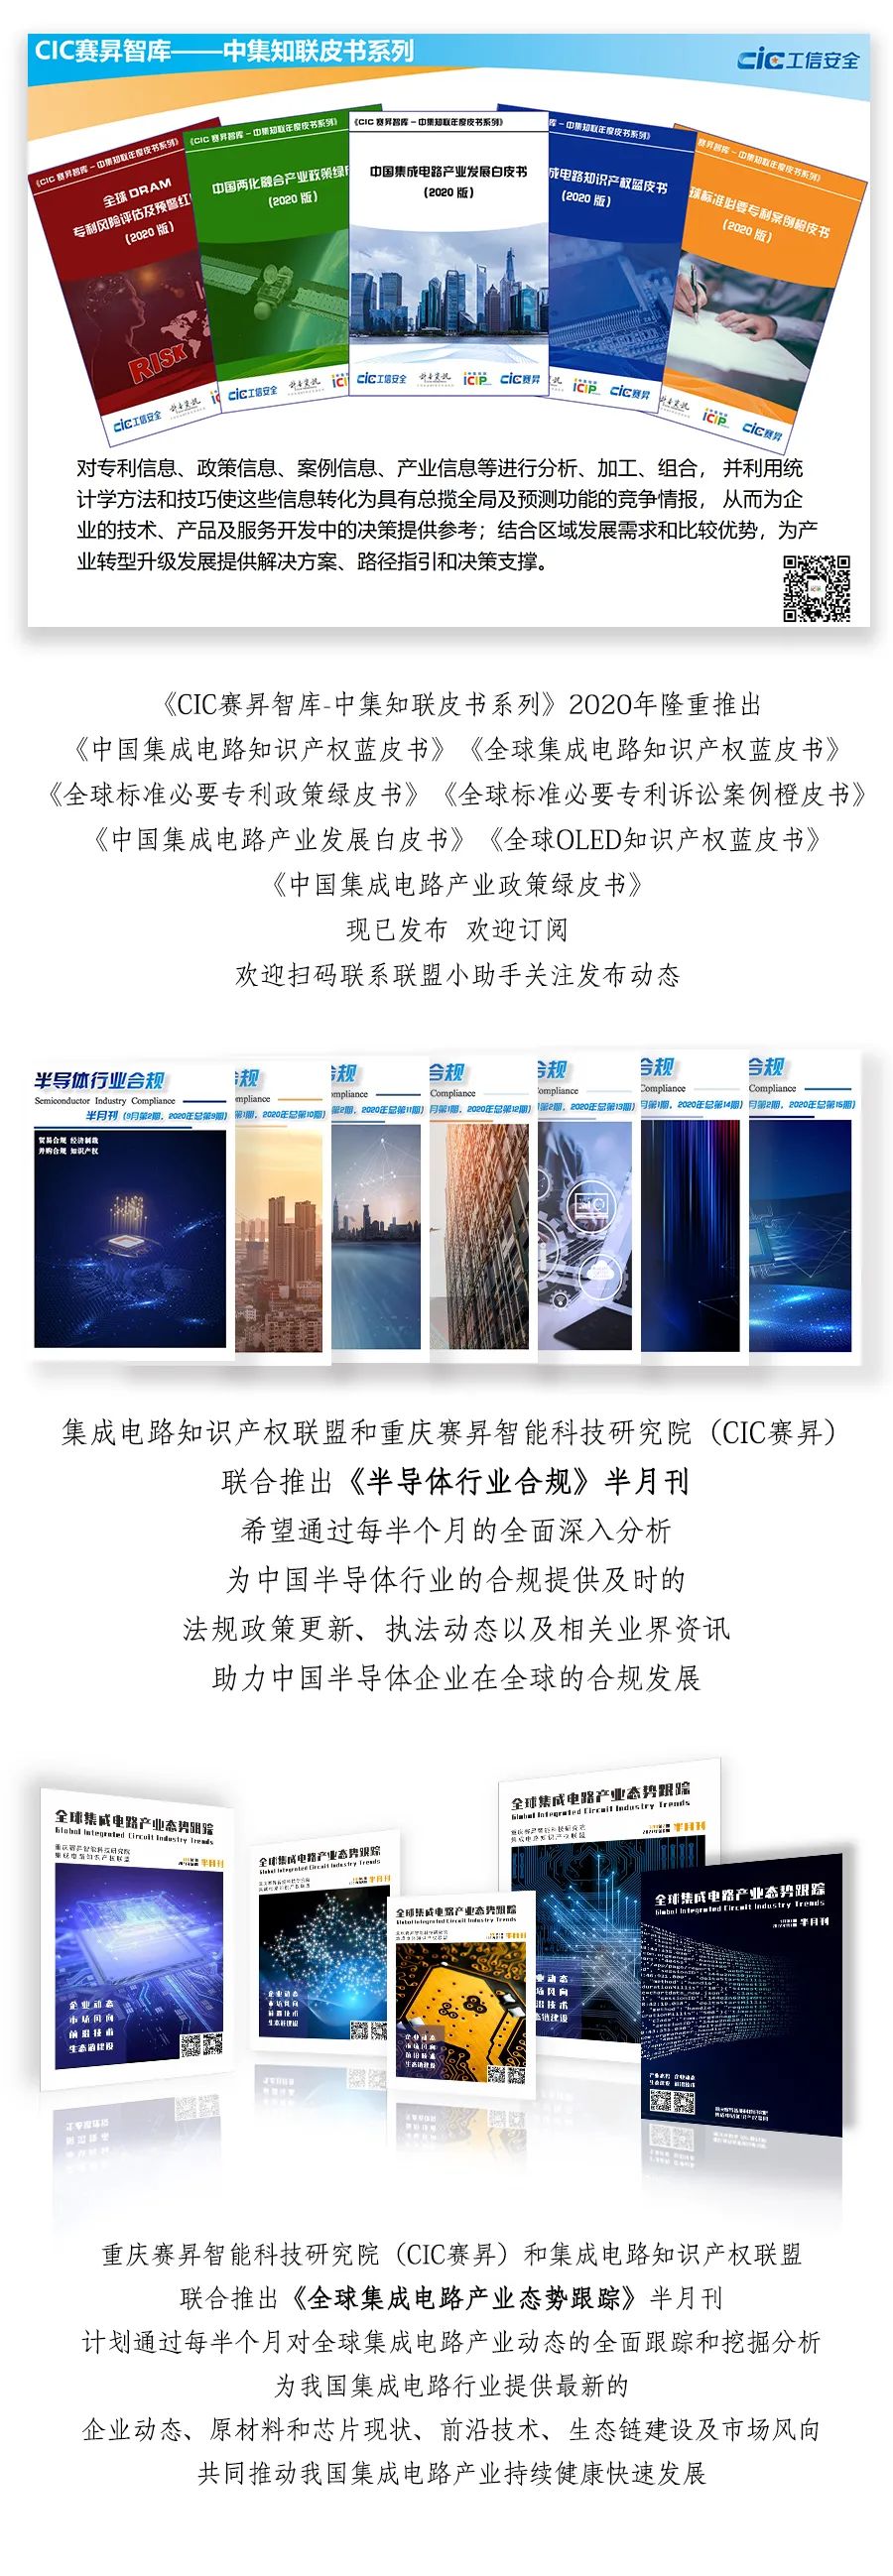  热烈欢迎重庆线易电子科技有限责任公司加入联盟